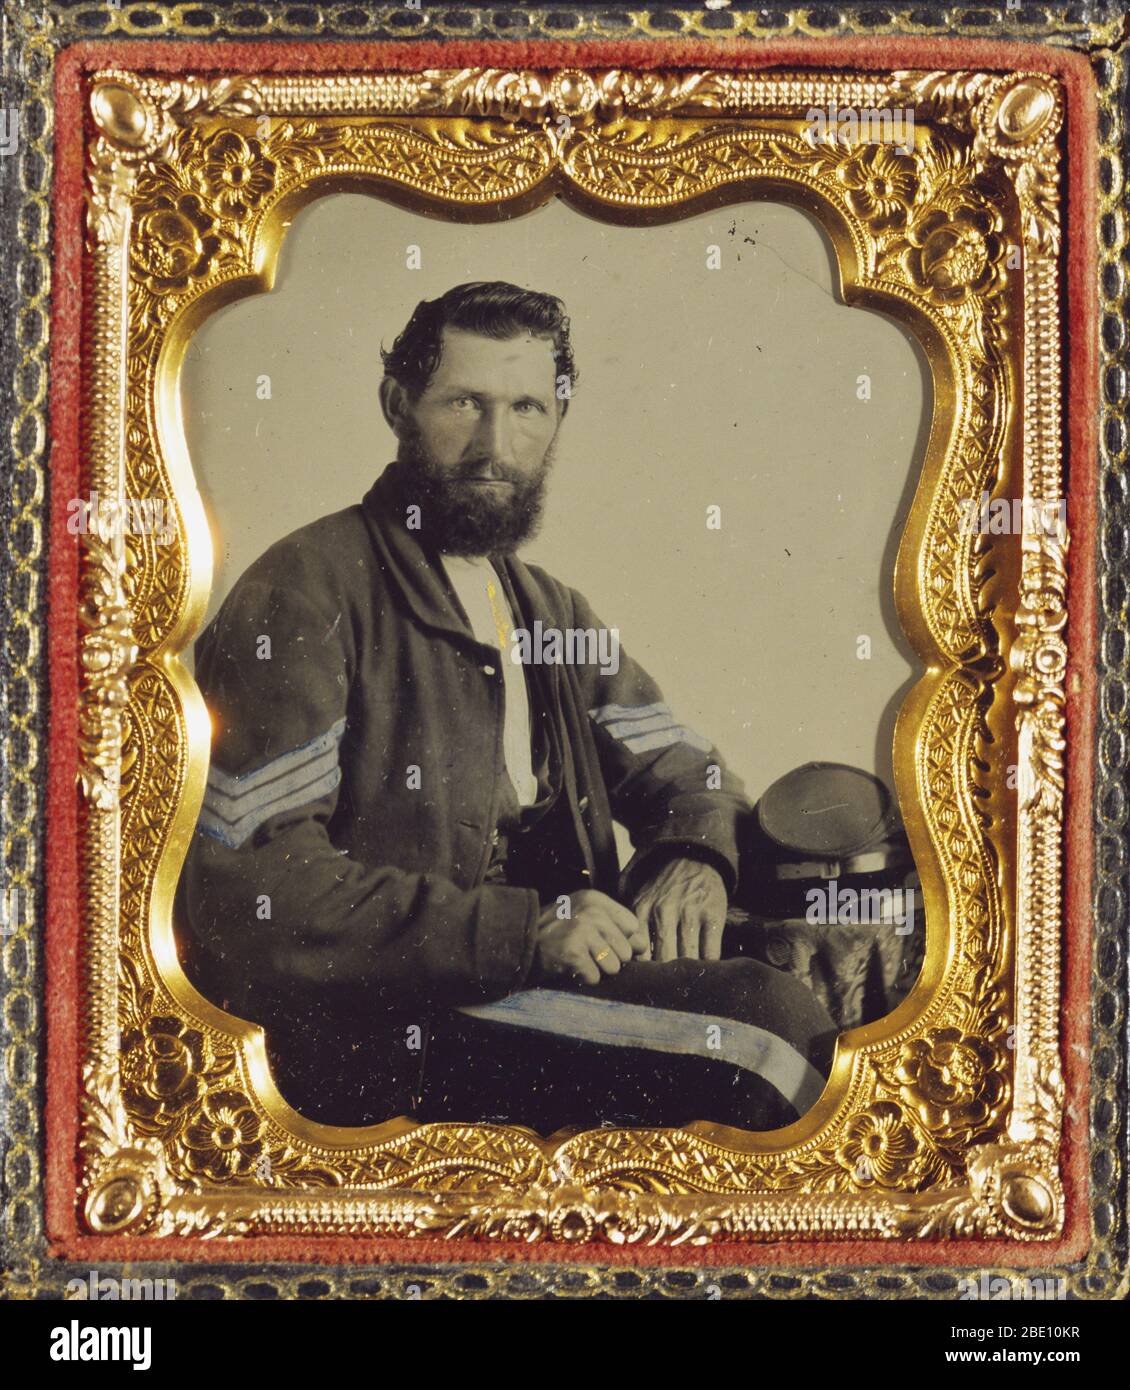 Porträt eines konföderierten Soldaten von ca. 1862. Ambrotype, handkoloriert. Amerikanischer Bürgerkrieg. Stockfoto